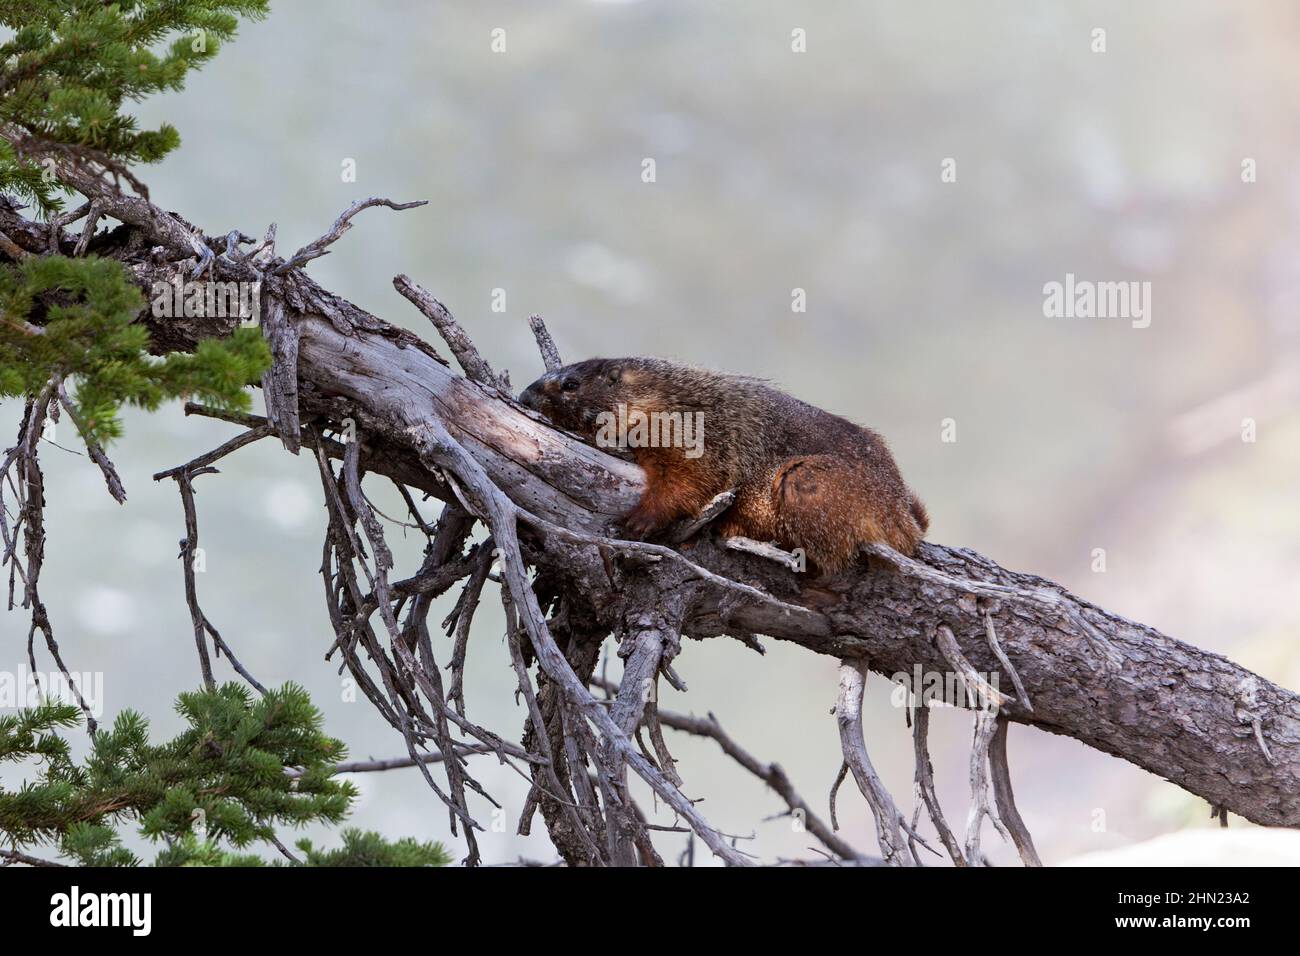 Marmotte à ventre jaune (Marmota flaviventris) se reposant à l'ombre d'un arbre tombé, Upper Falls, parc national de Yellowstone, Wyoming, États-Unis Banque D'Images